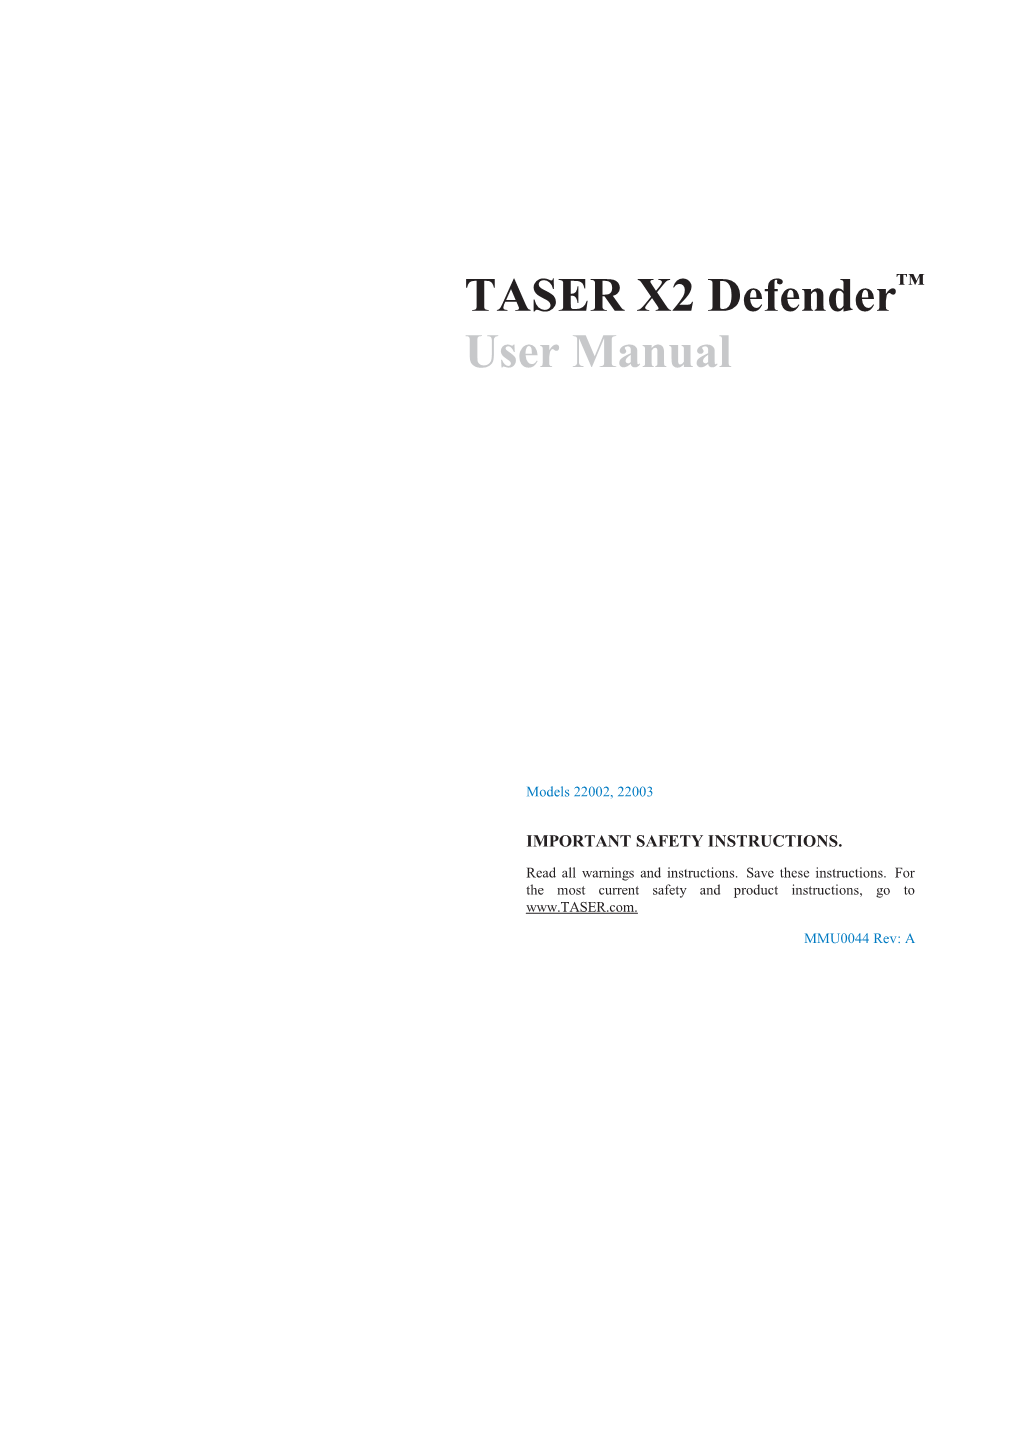 TASER X2 Defender User Manual